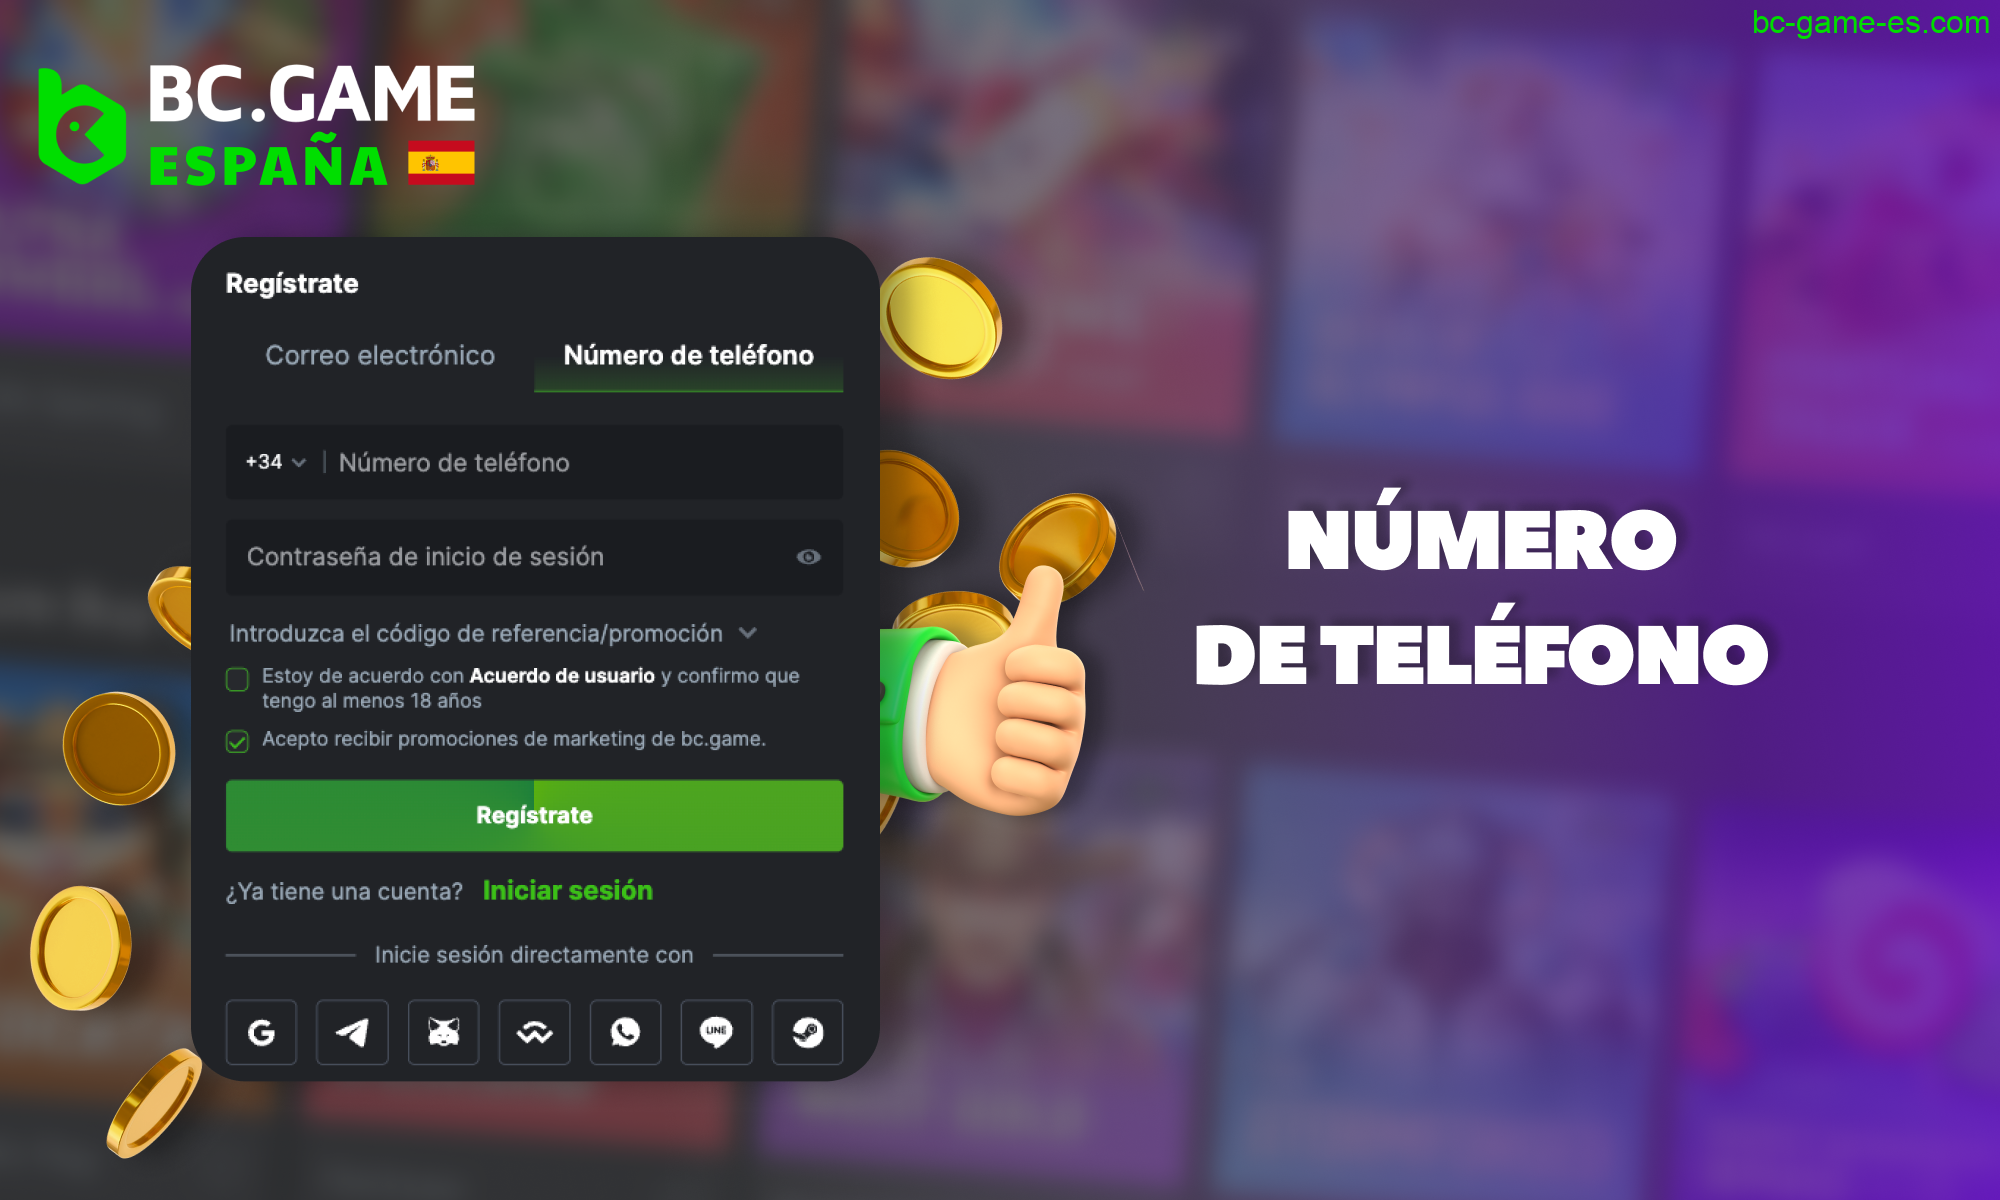 BC Game España - registro a través del teléfono móvil